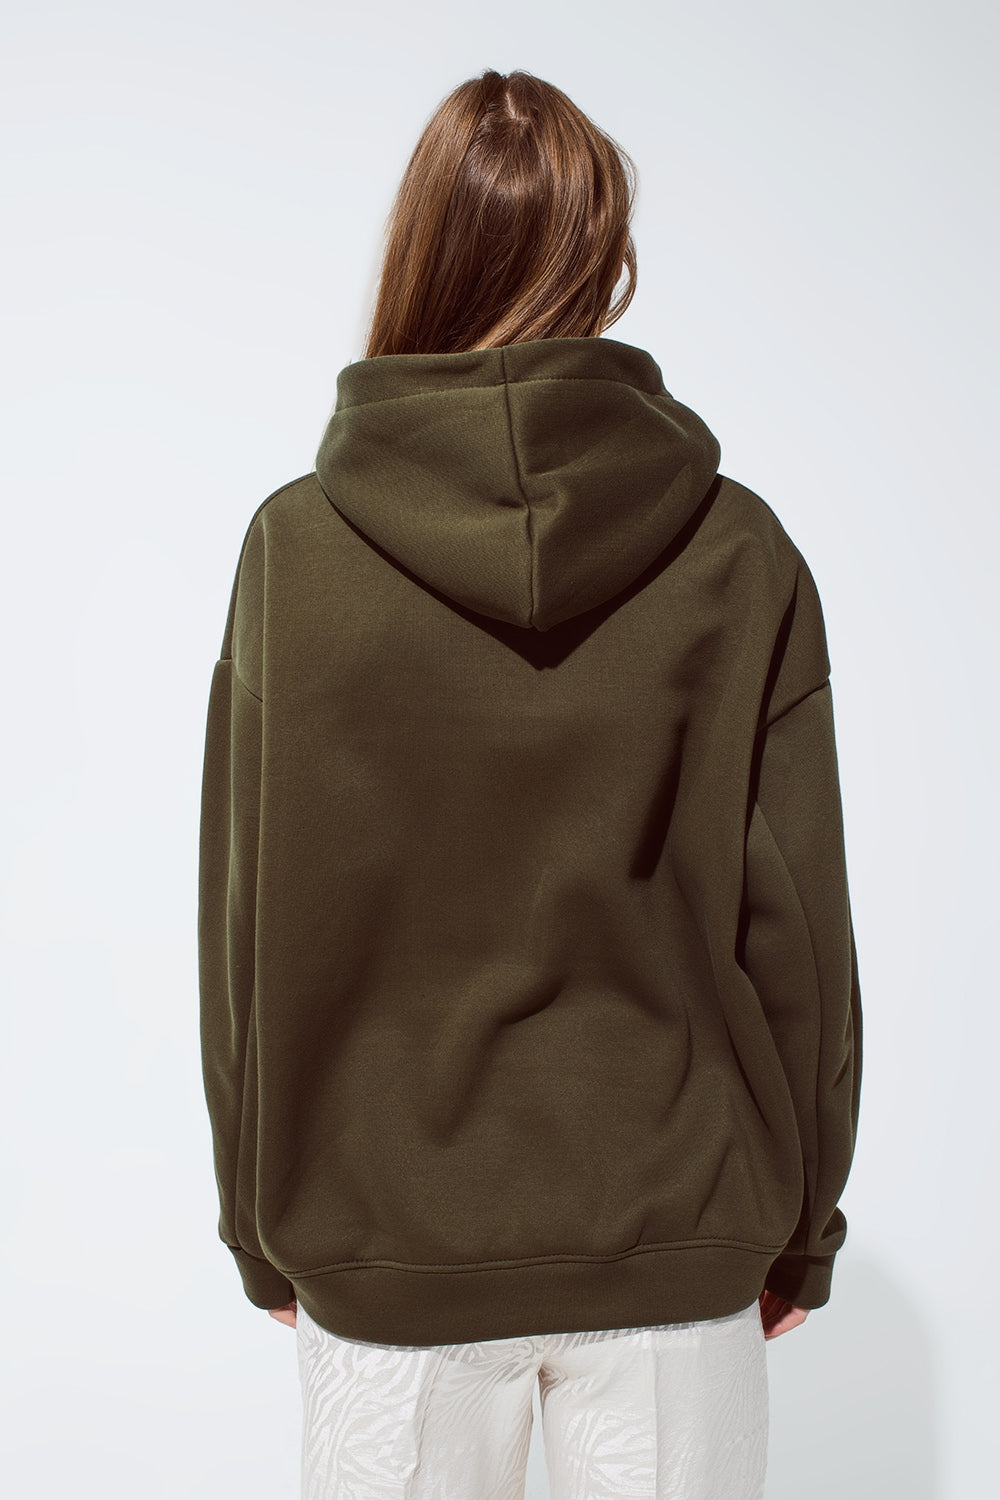 Khaki kleur hoodie met geborduurde Cest La Vie tekst